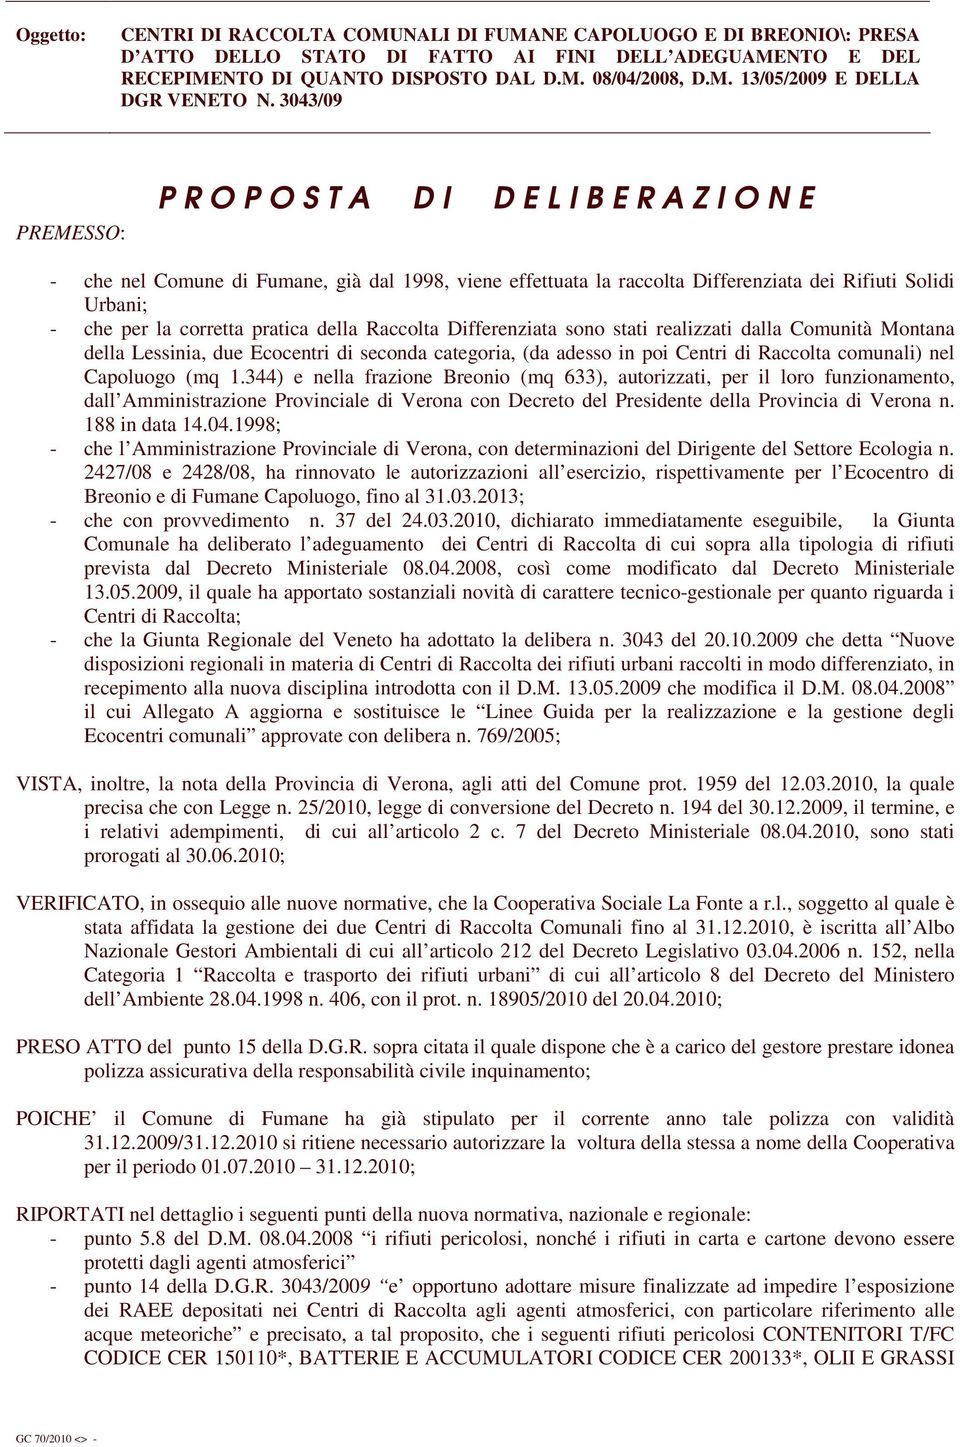 1.344) e nella frazione Breonio (mq 633), autorizzati, per il loro funzionamento, dall Amministrazione Provinciale di Verona con Decreto del Presidente della Provincia di Verona n. 188 in data 14.04.